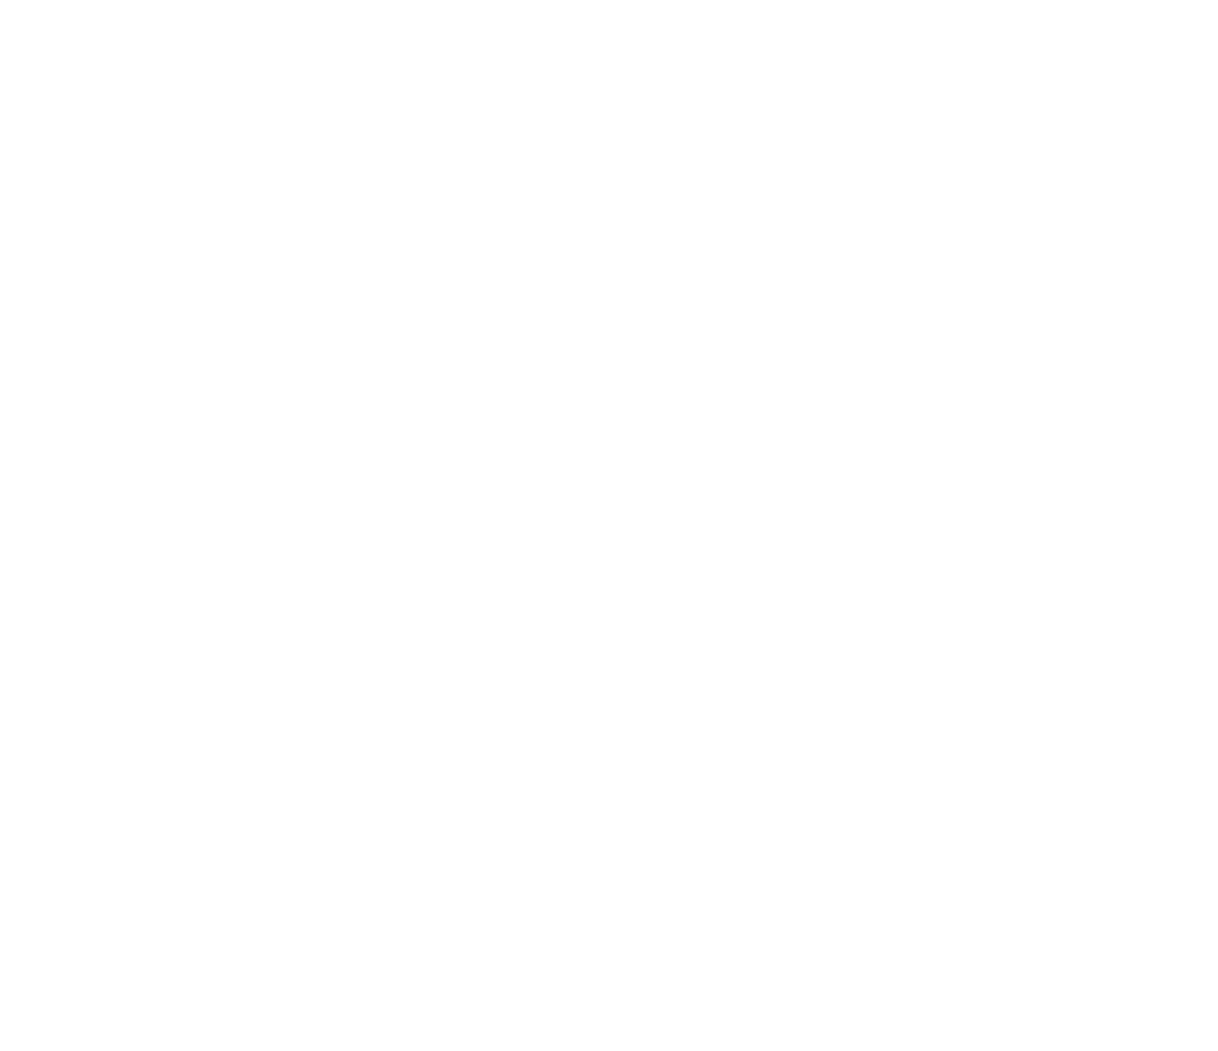 Мельница 1907-1908 г http://elib.shpl.ru/nodes/16102#page/224/mode/inspect/zoom/4 - Путеводитель по Петергофу. Измайлов М.М., СПб, 1909.